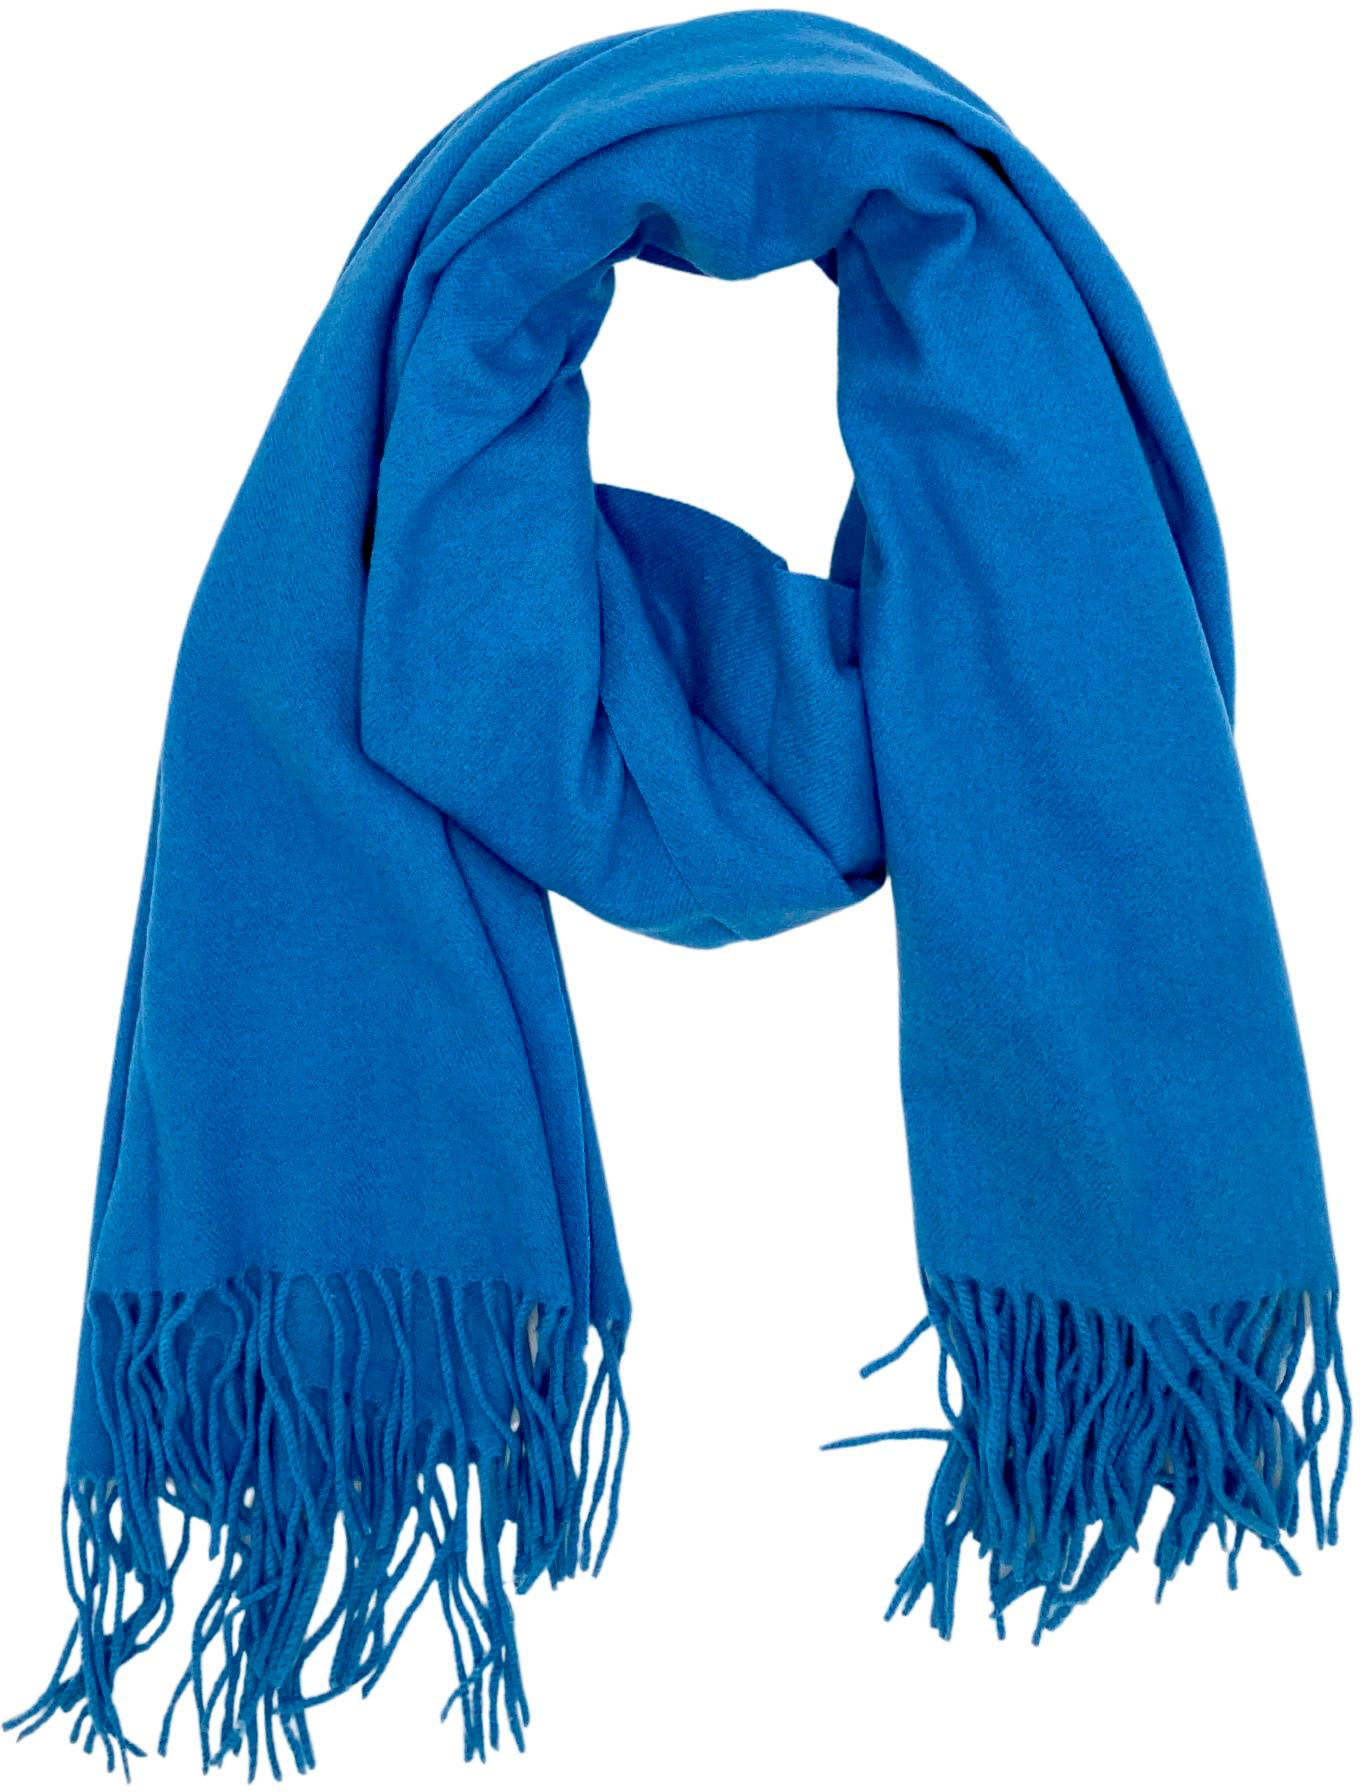 Schals online kaufen | Schal in angesagtem Design bei Quelle